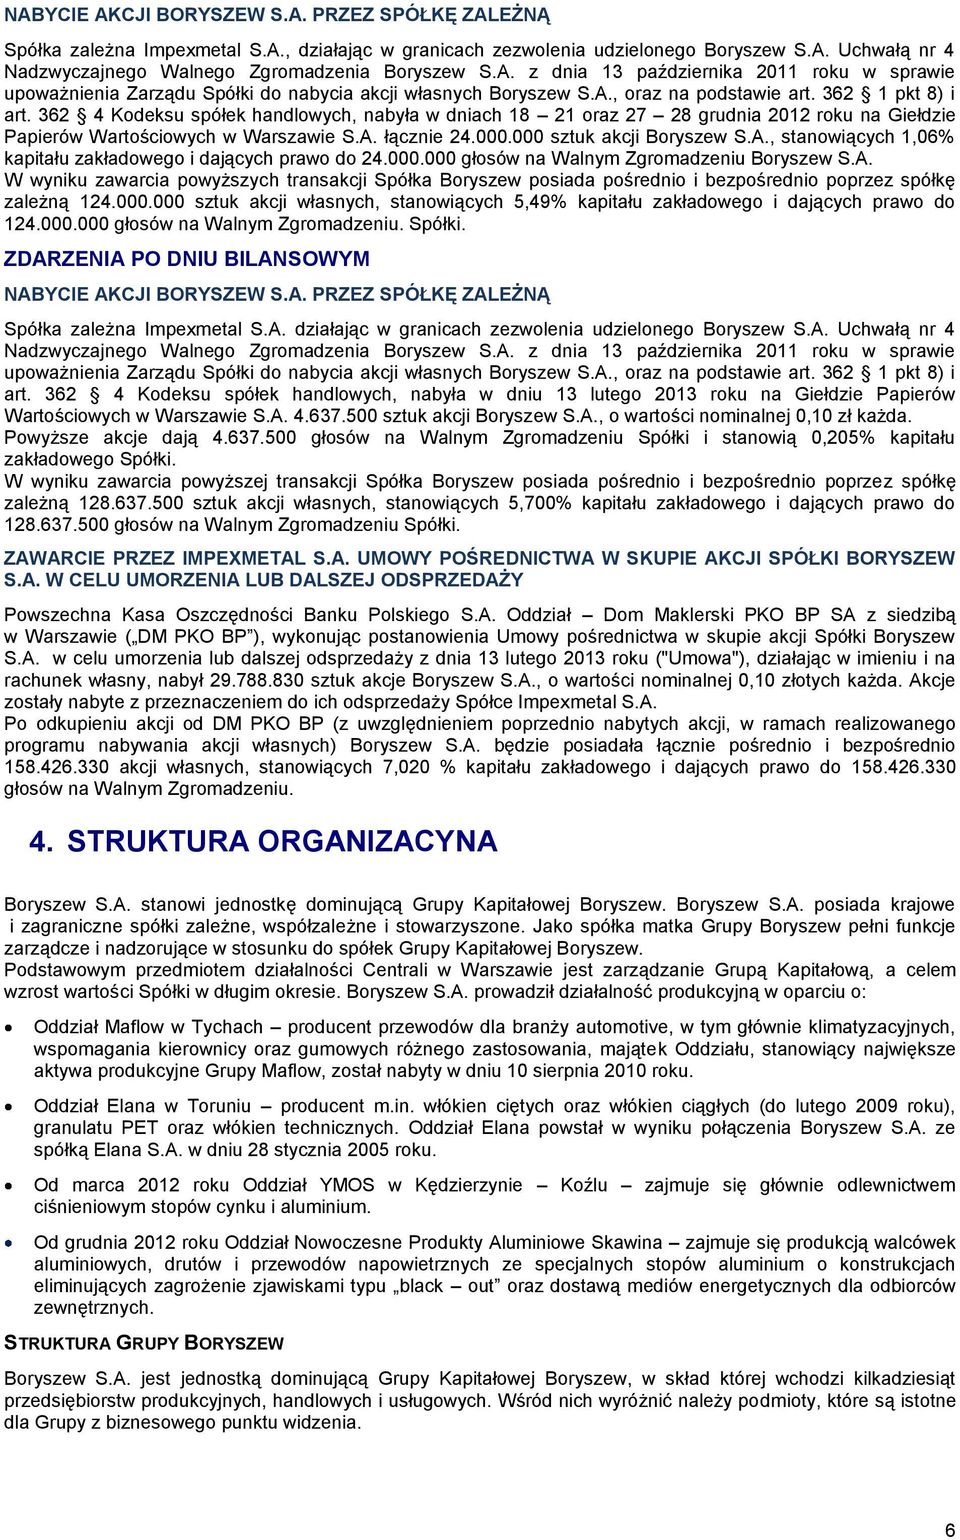 362 4 Kodeksu spółek handlowych, nabyła w dniach 18 21 oraz 27 28 grudnia 2012 roku na Giełdzie Papierów Wartościowych w Warszawie S.A. łącznie 24.000.000 sztuk akcji Boryszew S.A., stanowiących 1,06% kapitału zakładowego i dających prawo do 24.